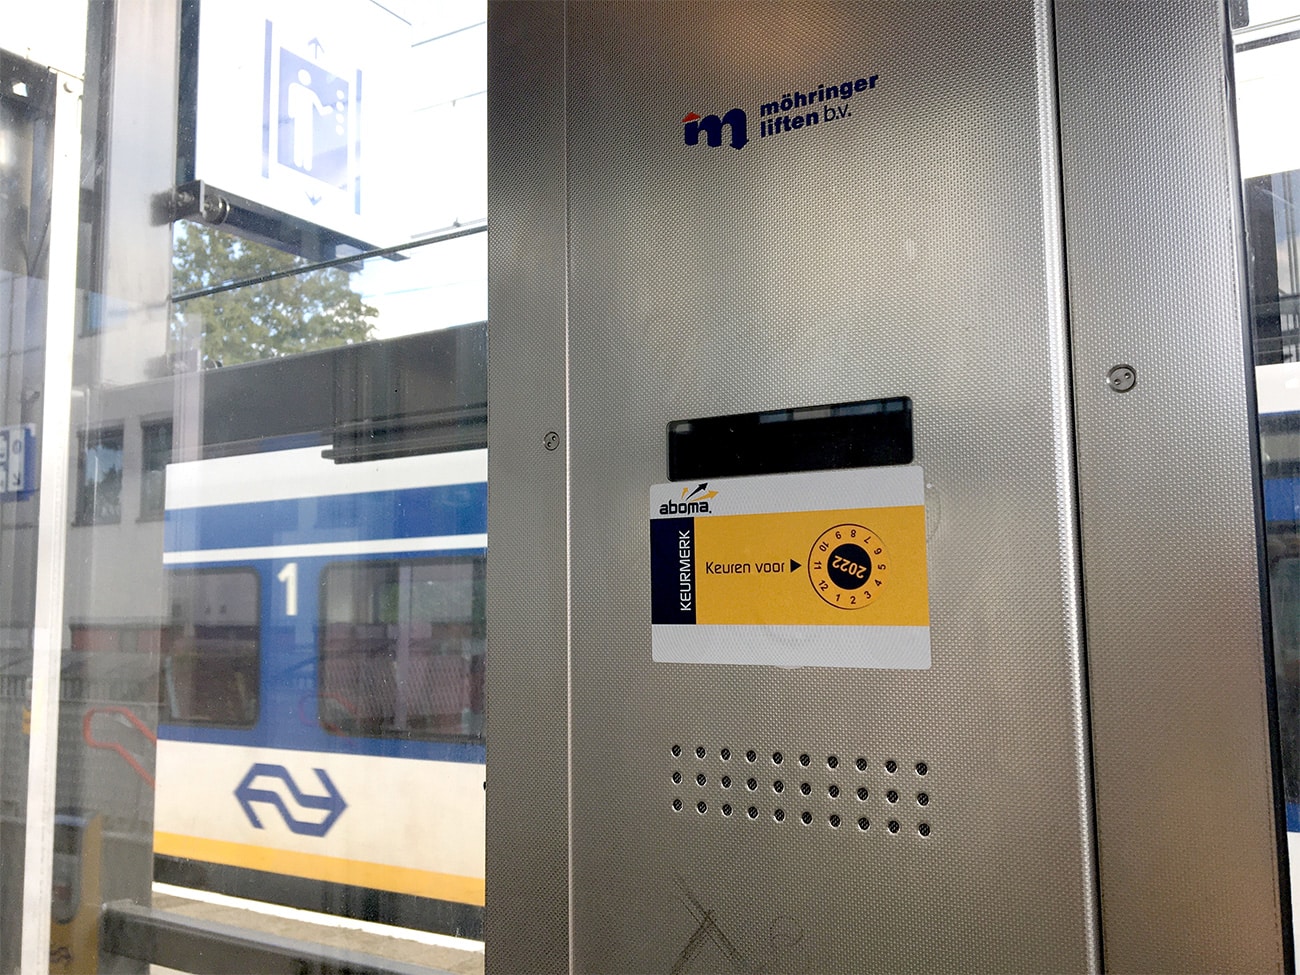 Lift-op-station-Bunnik-keurmerk